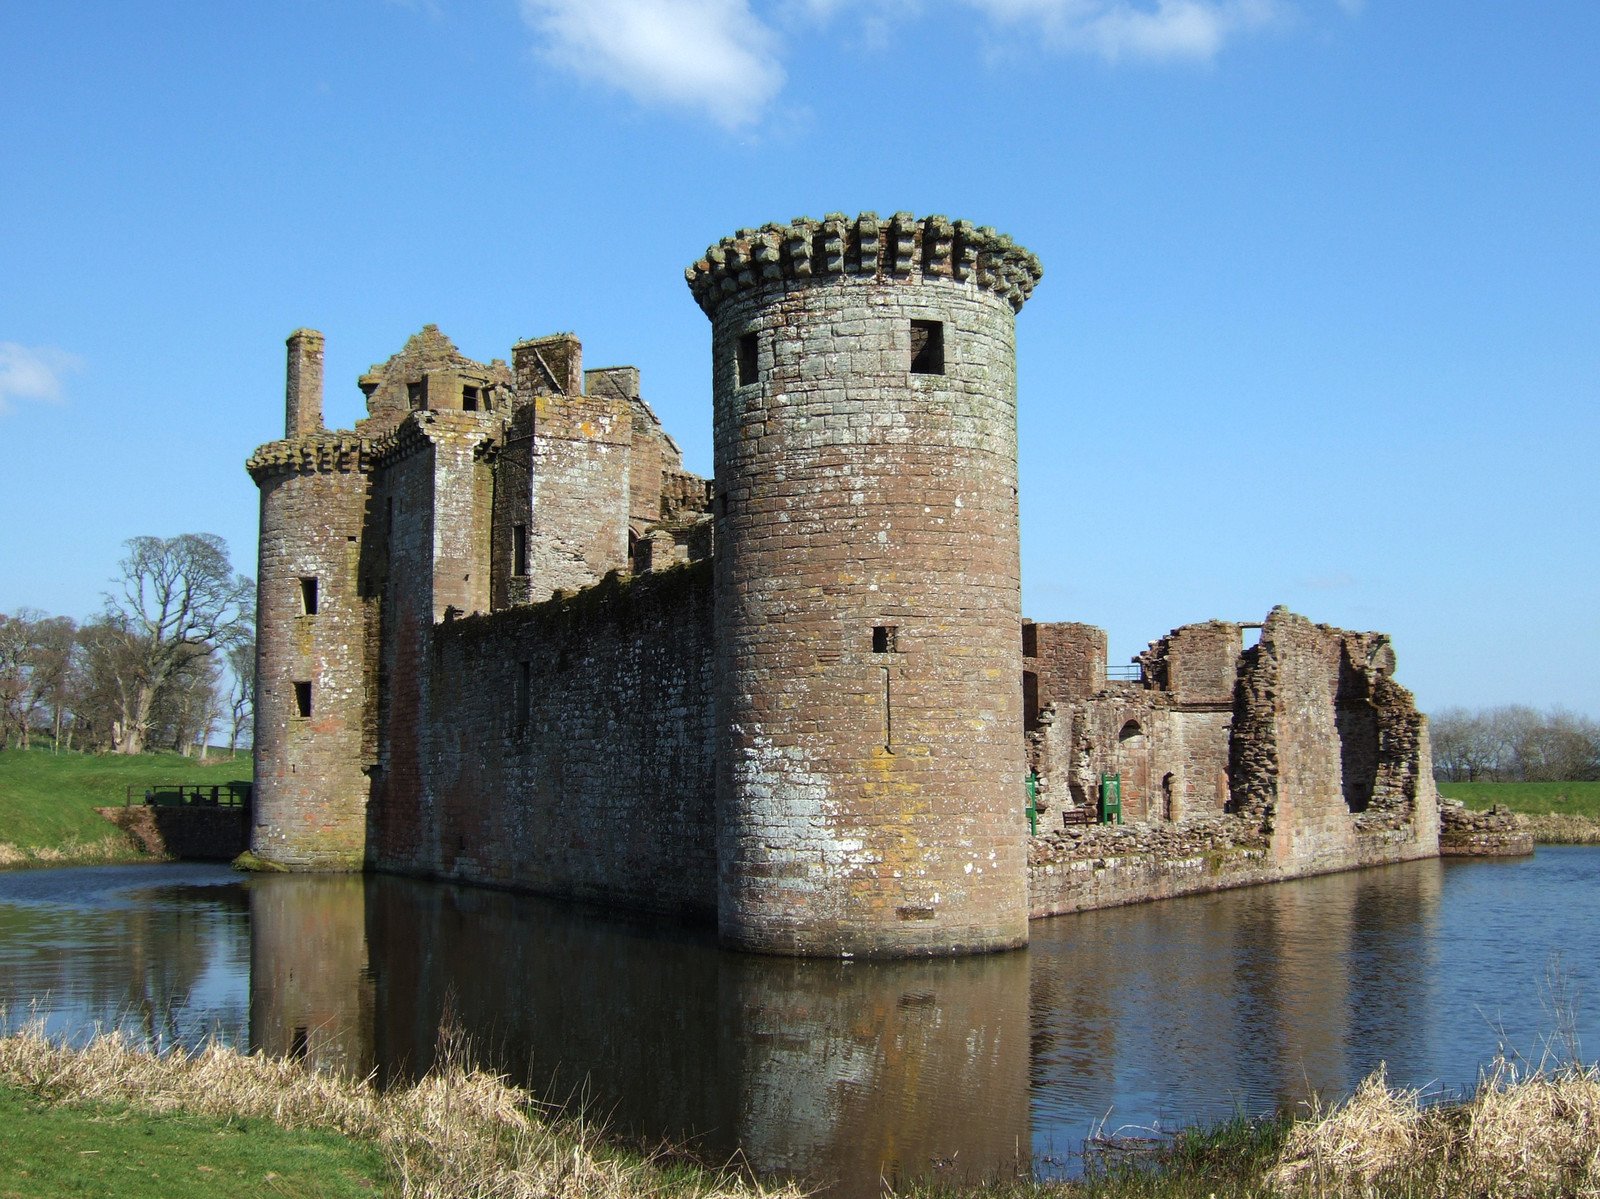 Caerlaverock castle